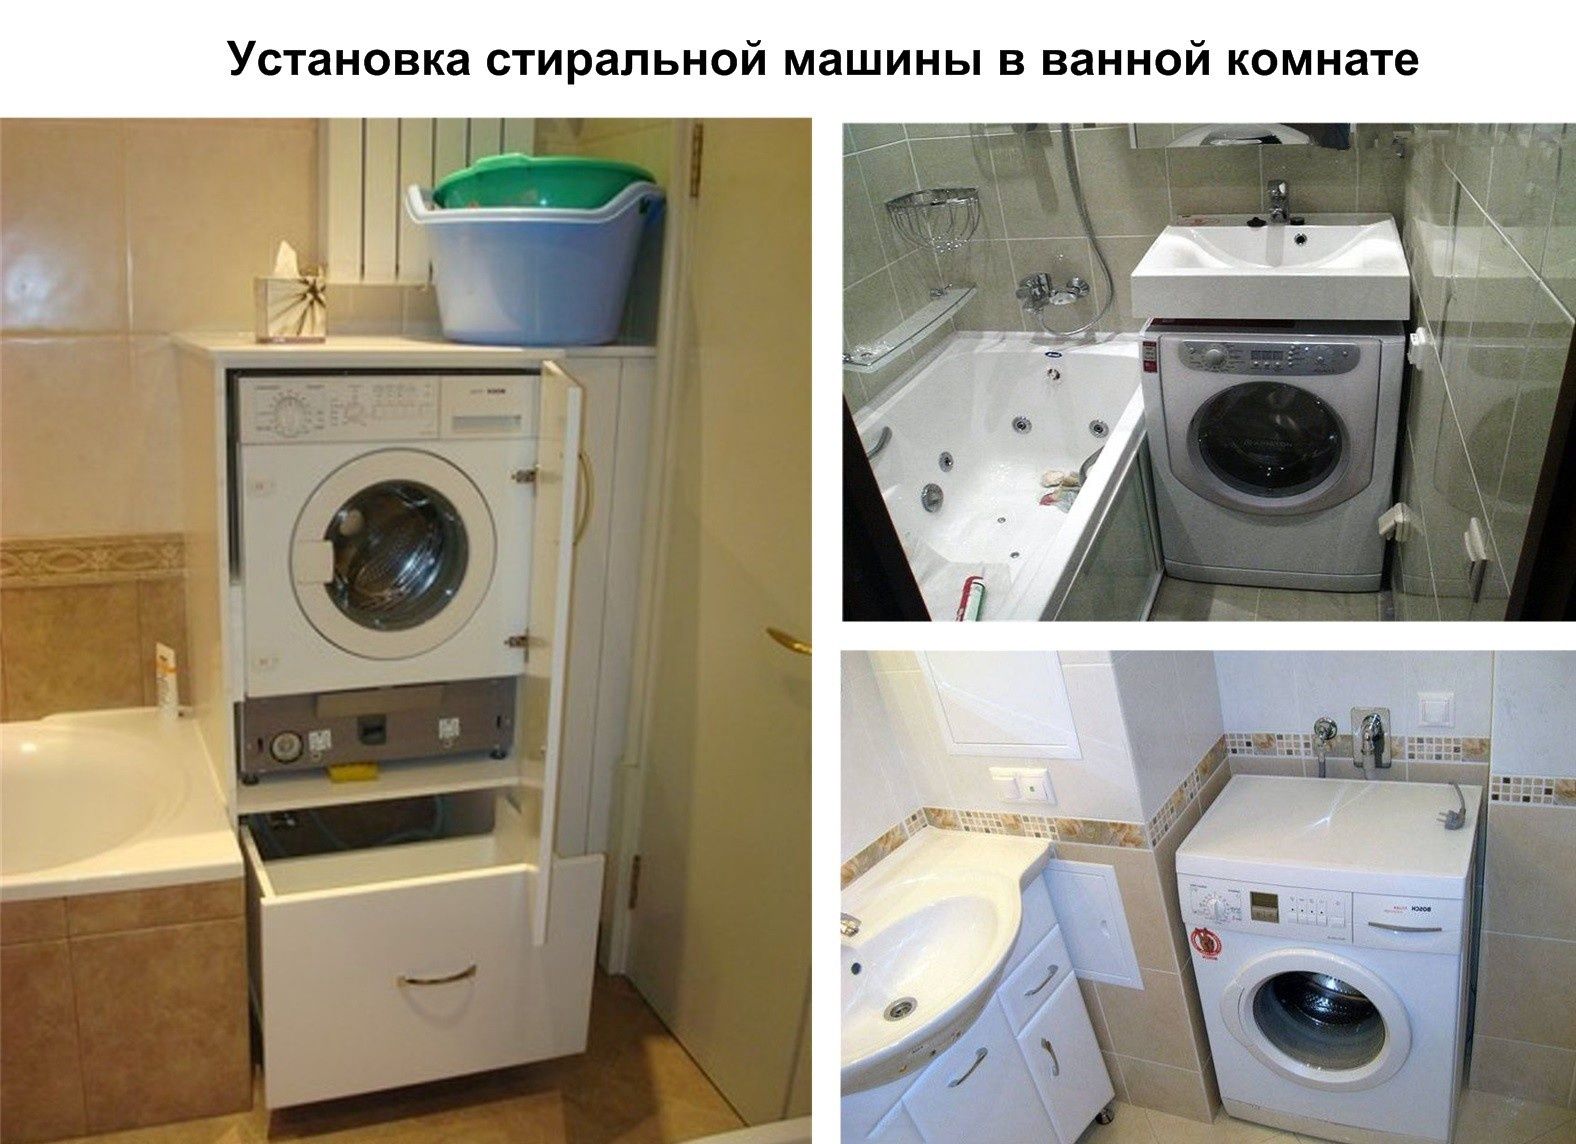 Установка стиральной машины, Люстры, телевизоры, Сплит-систем и т.д